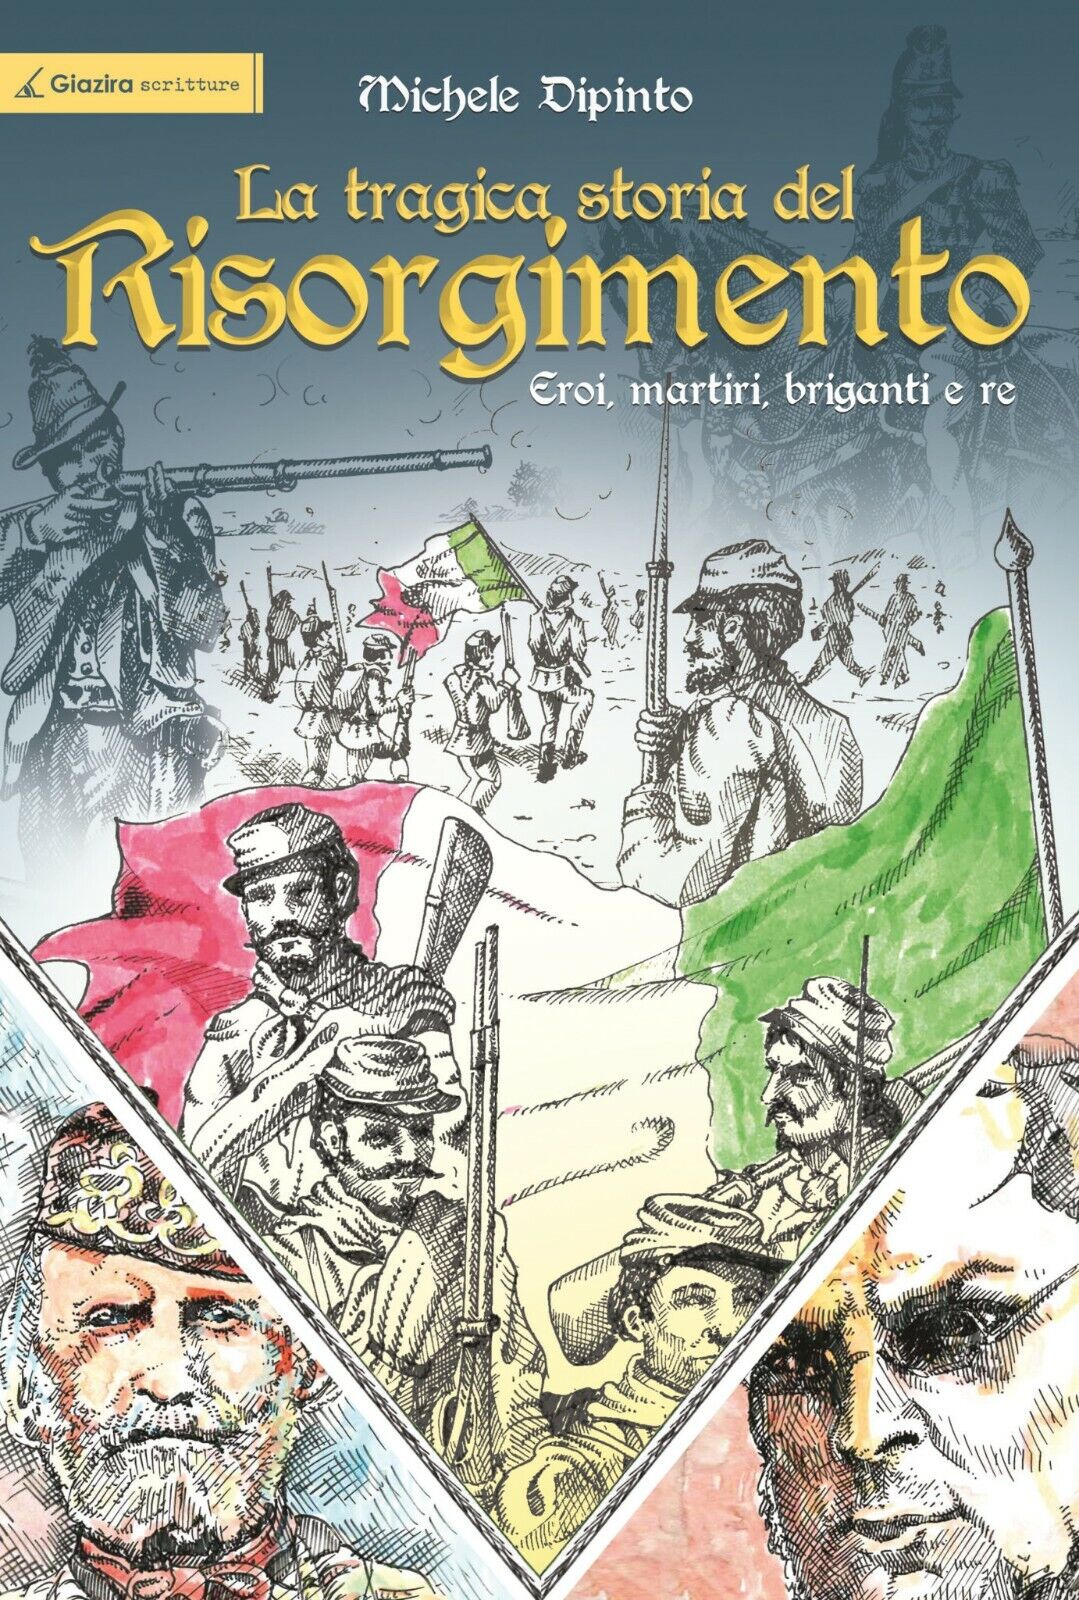 La tragica storia del Risorgimento... -Michele Dipinto-Giazira - 2020